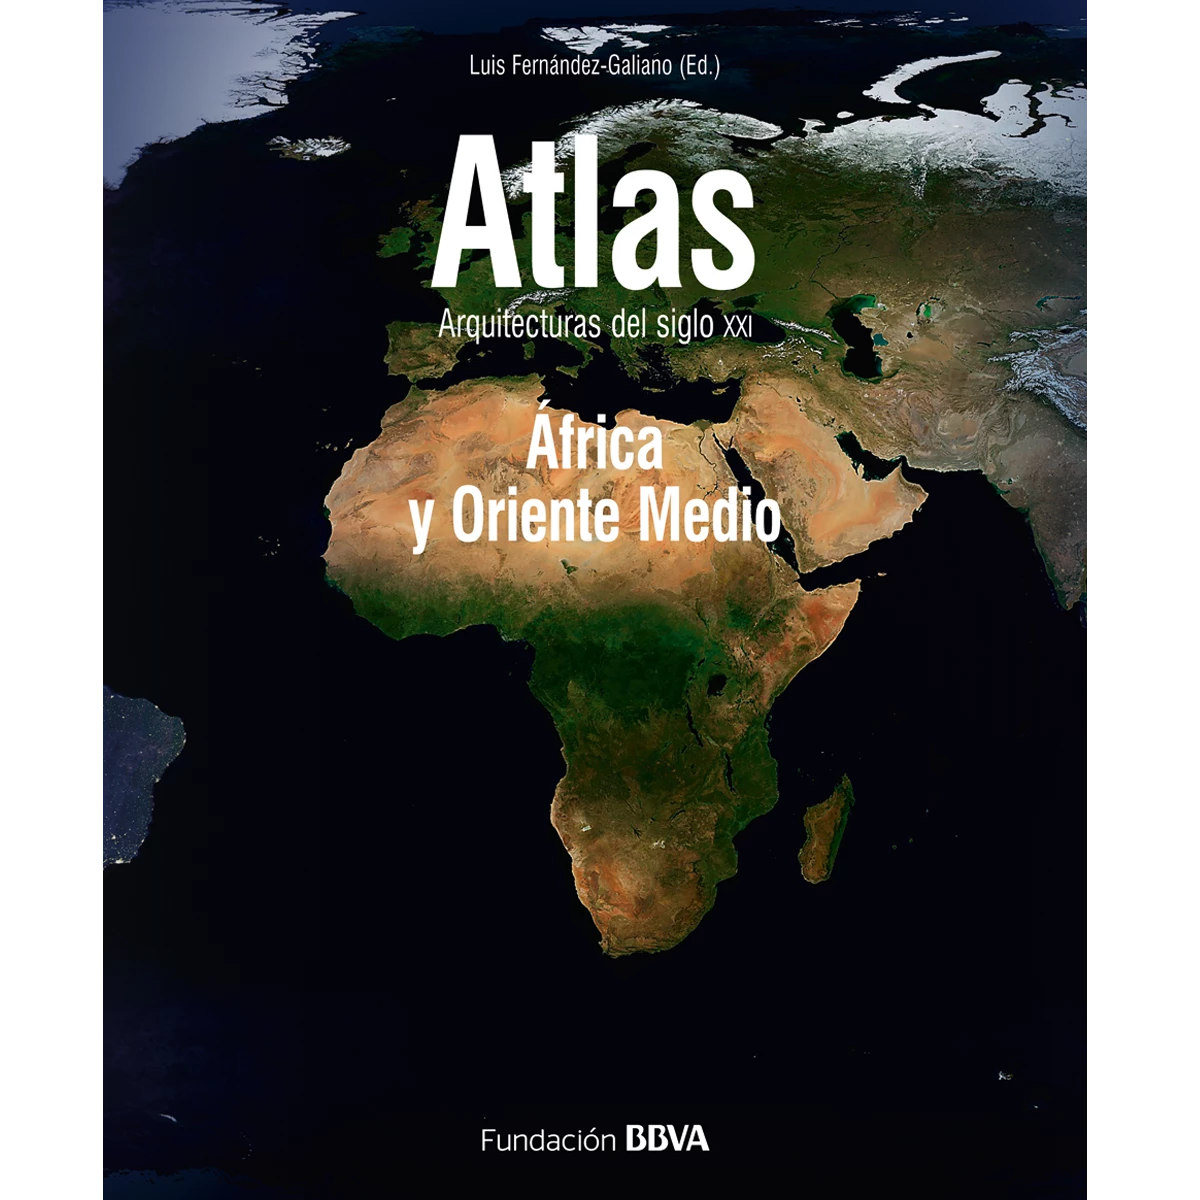 Atlas: Africa y Oriente Medio